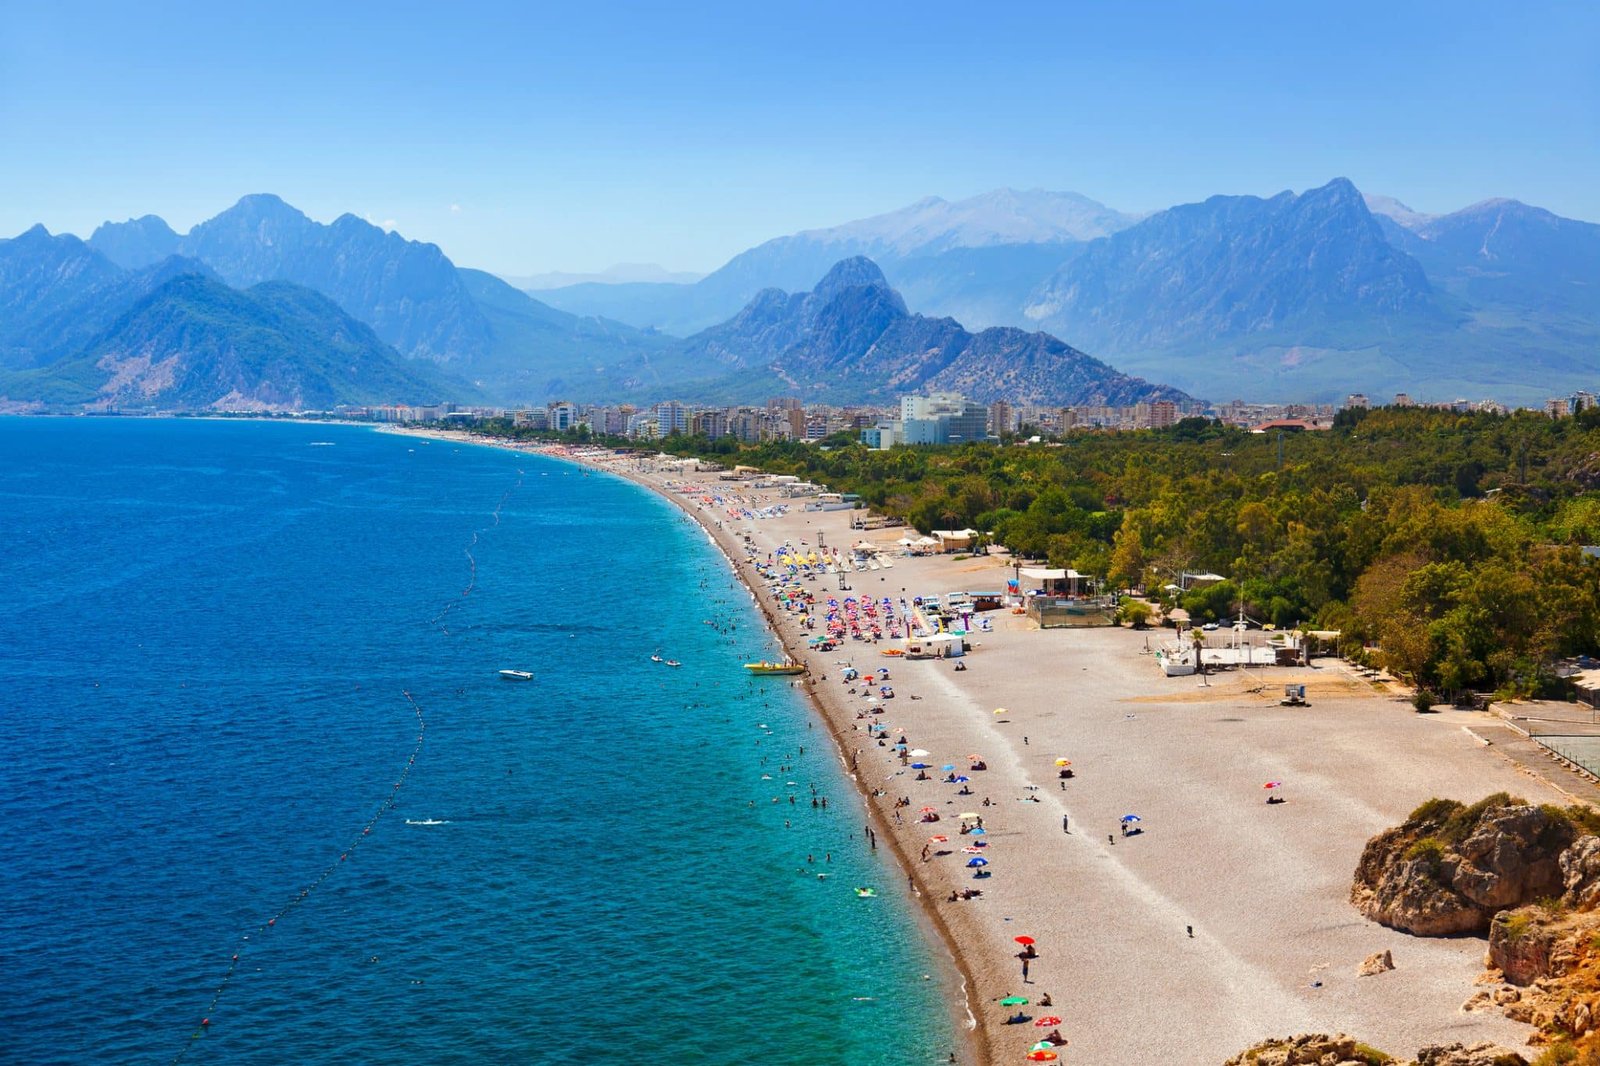 Beach at Antalya Turkey - travel background